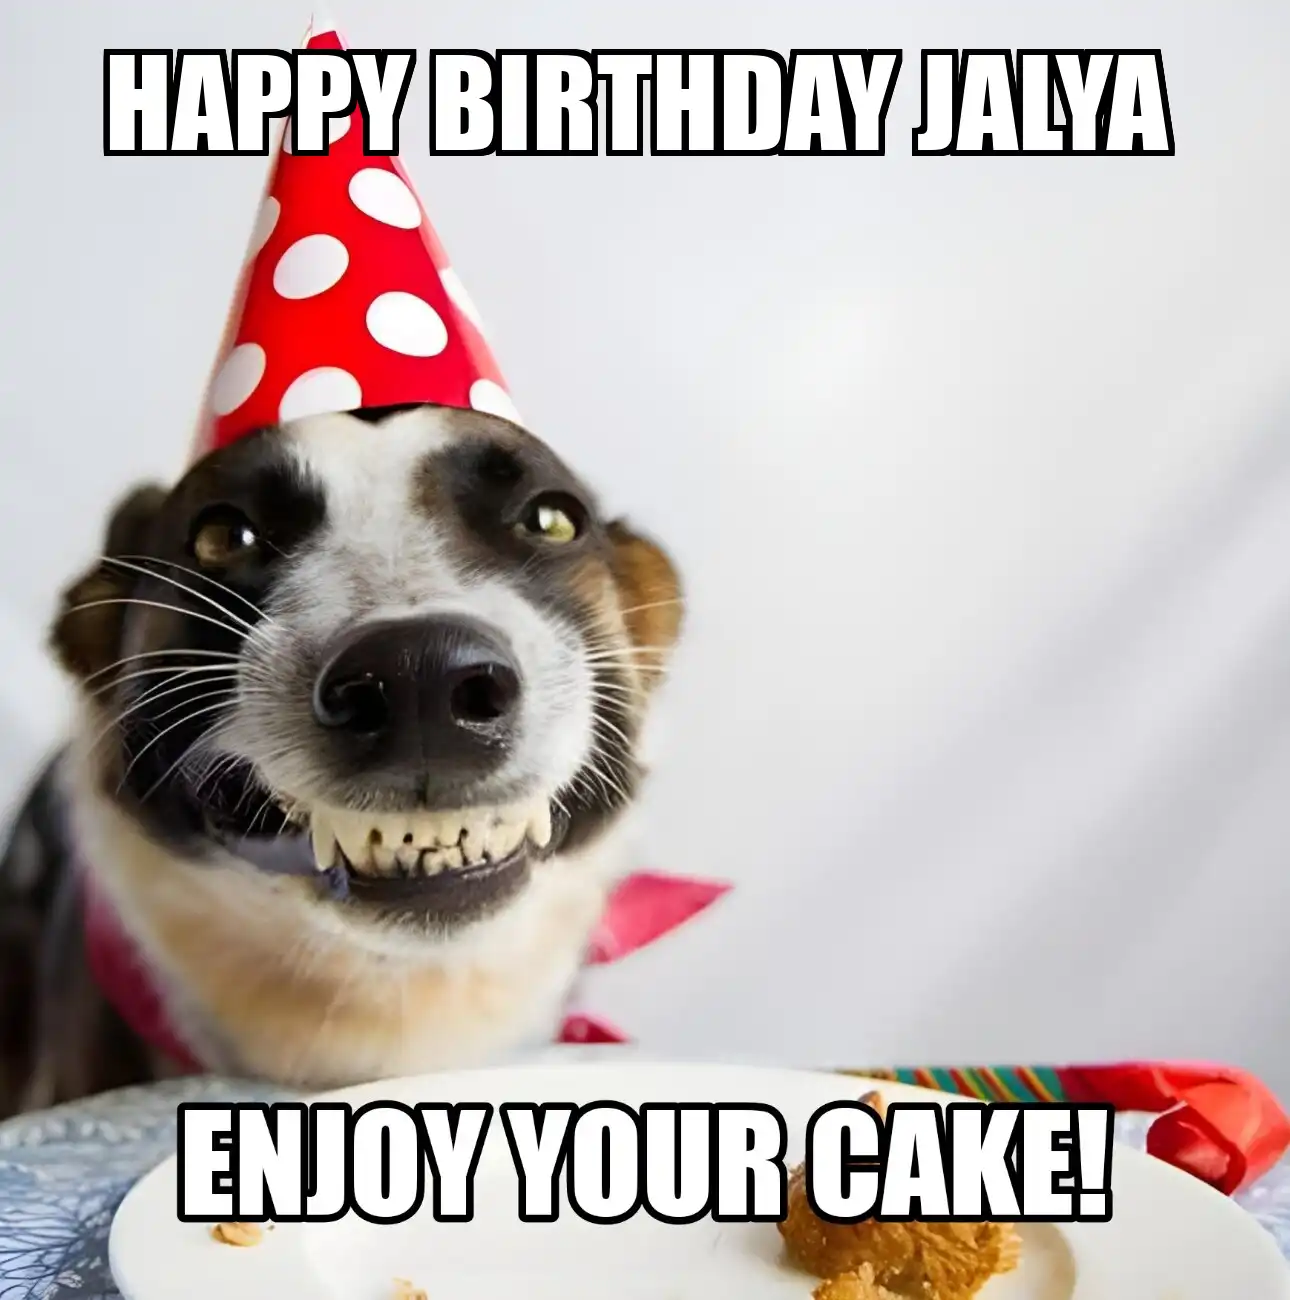 Happy Birthday Jalya Enjoy Your Cake Dog Meme